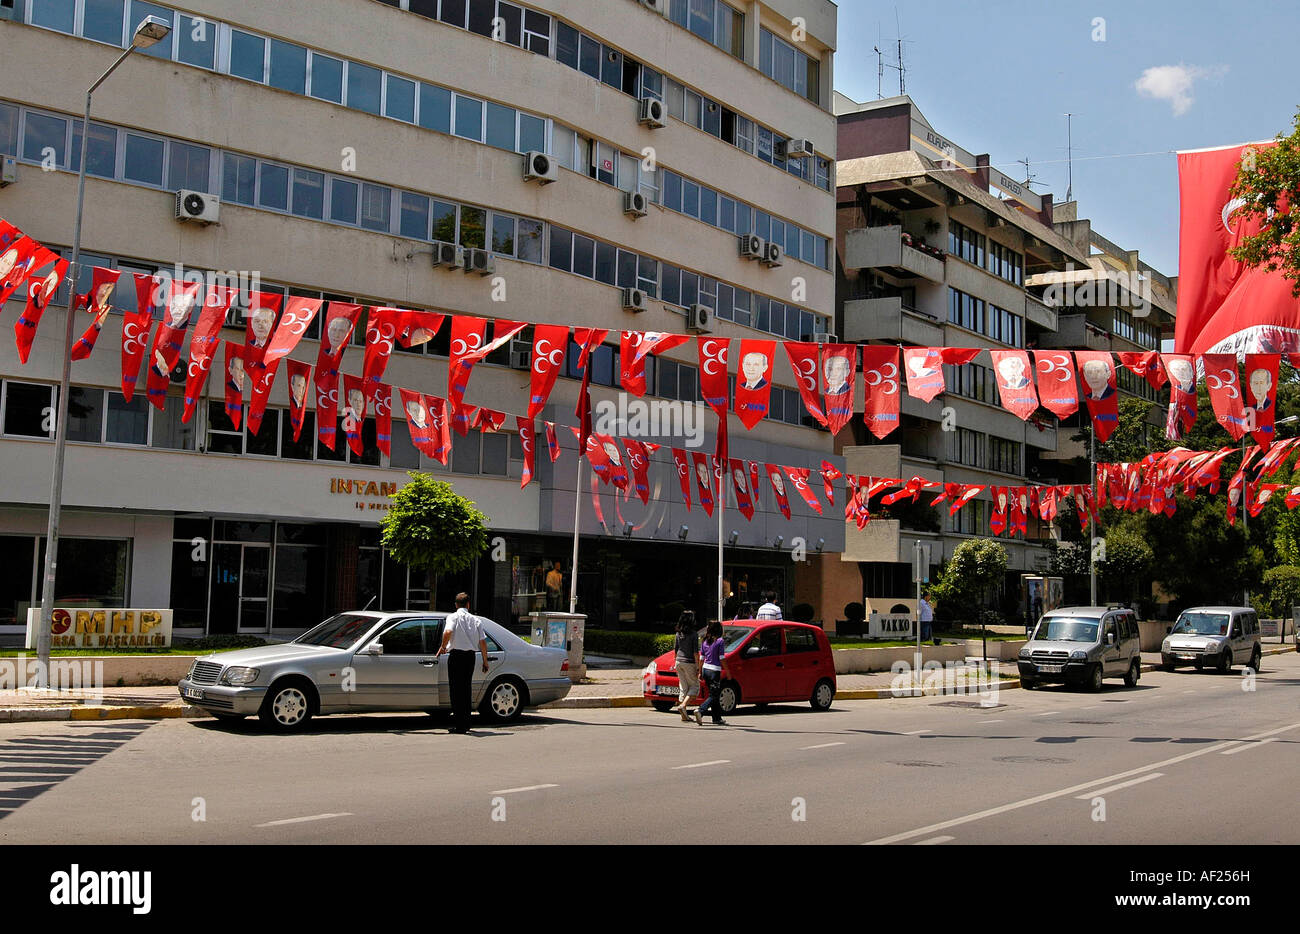 Bâtiments modernes et campagne électorale, les drapeaux de Cekirge, Bursa, Turquie Banque D'Images